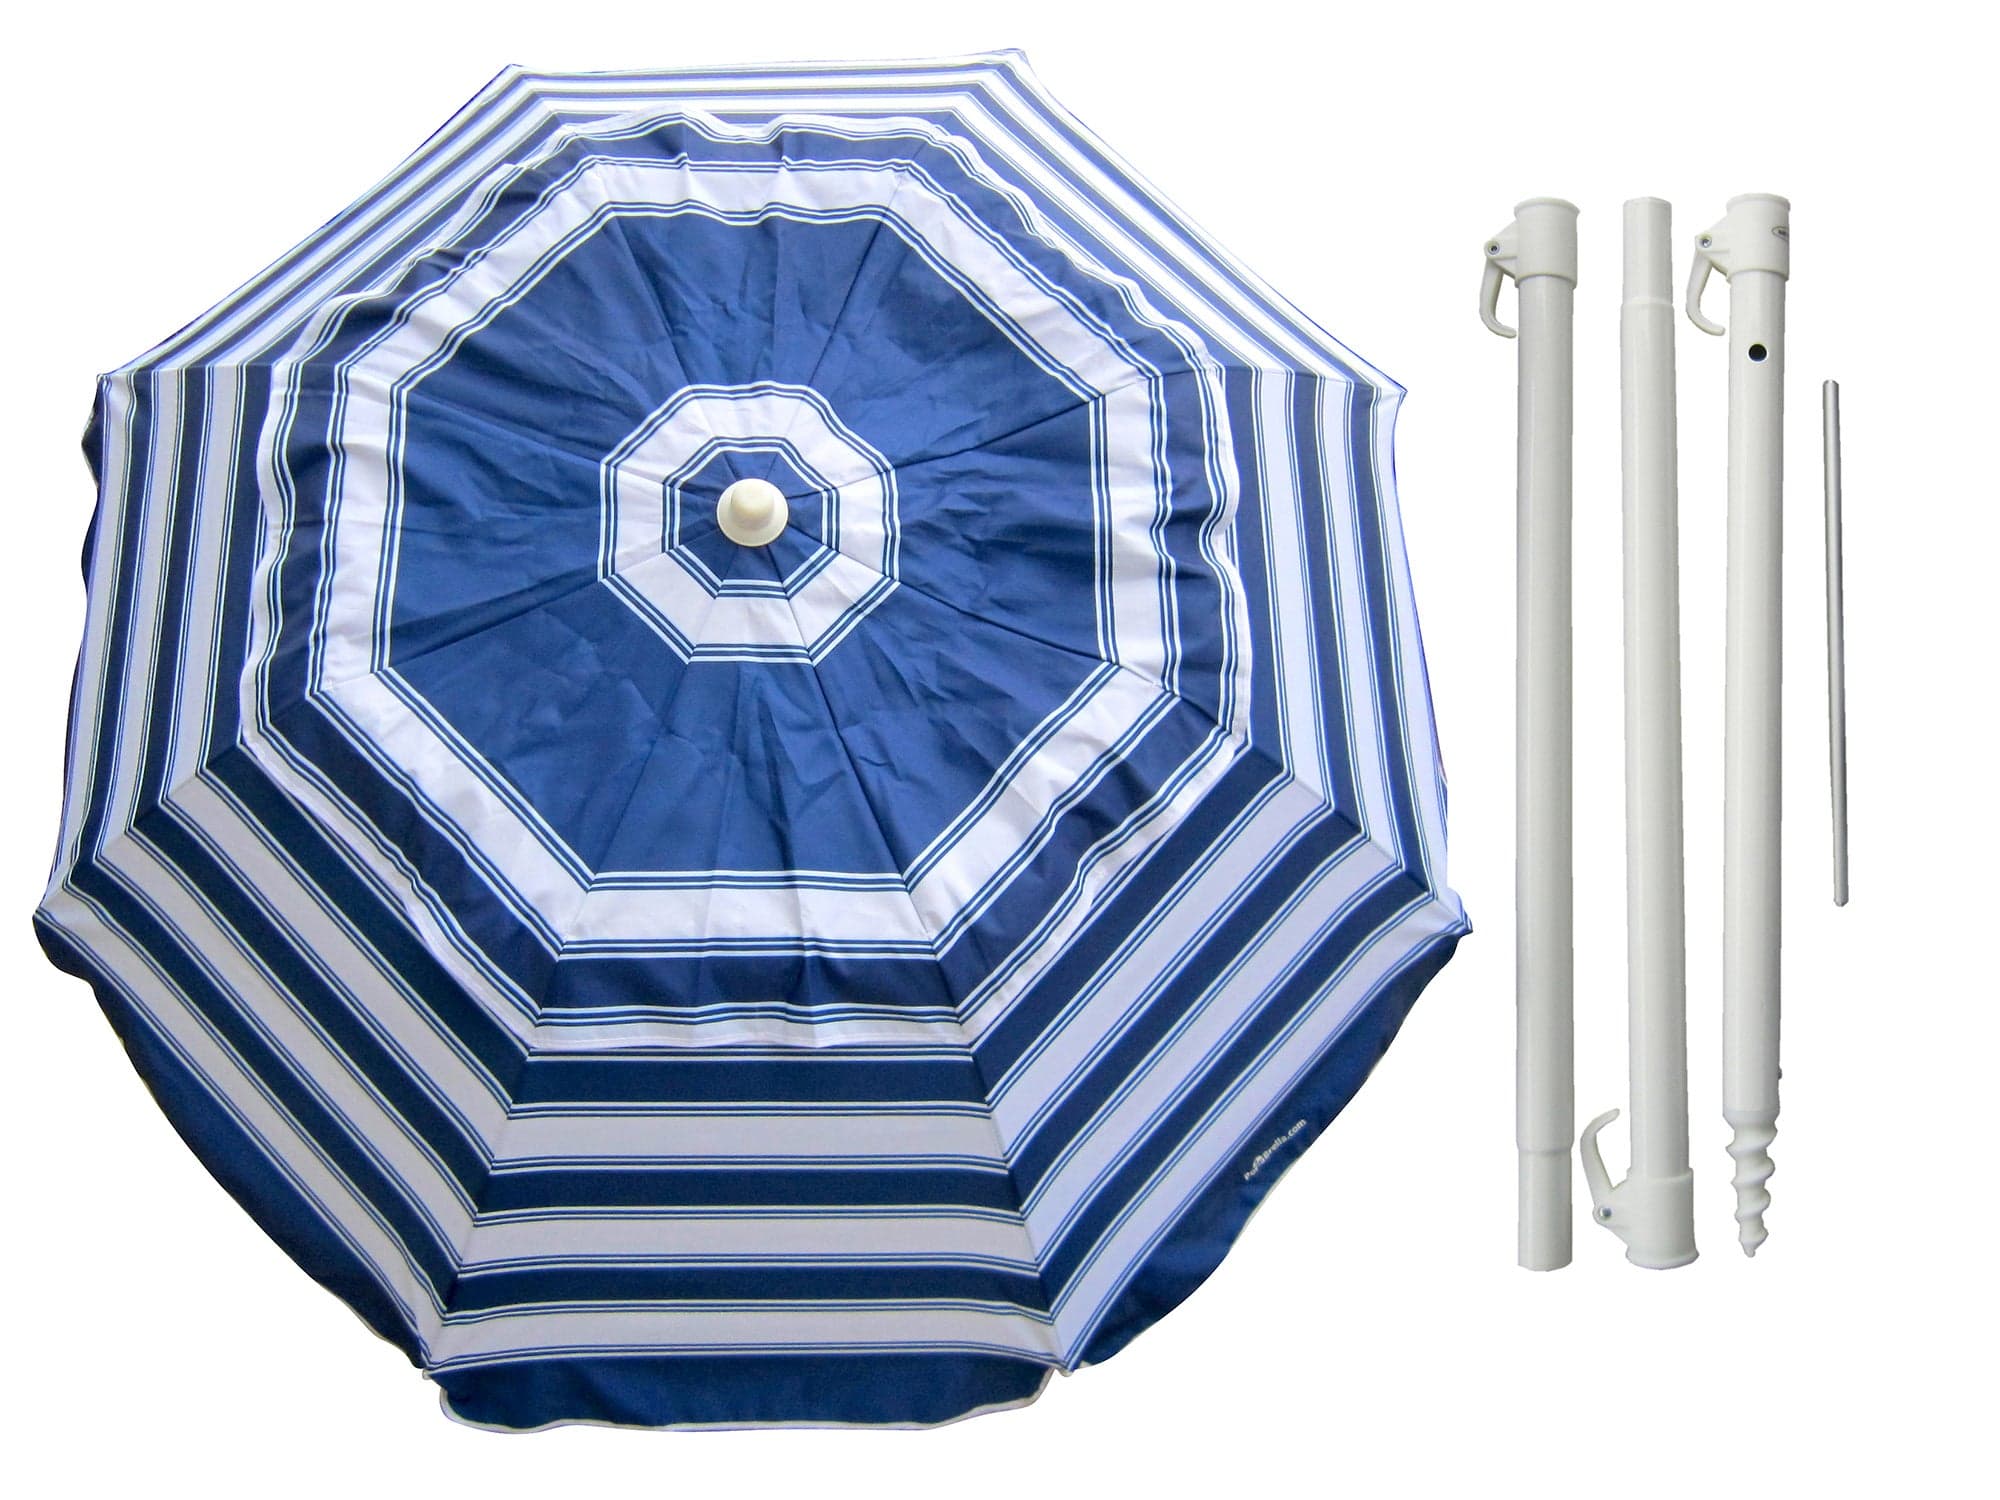 PortaBrella portable beach umbrella self-anchoring